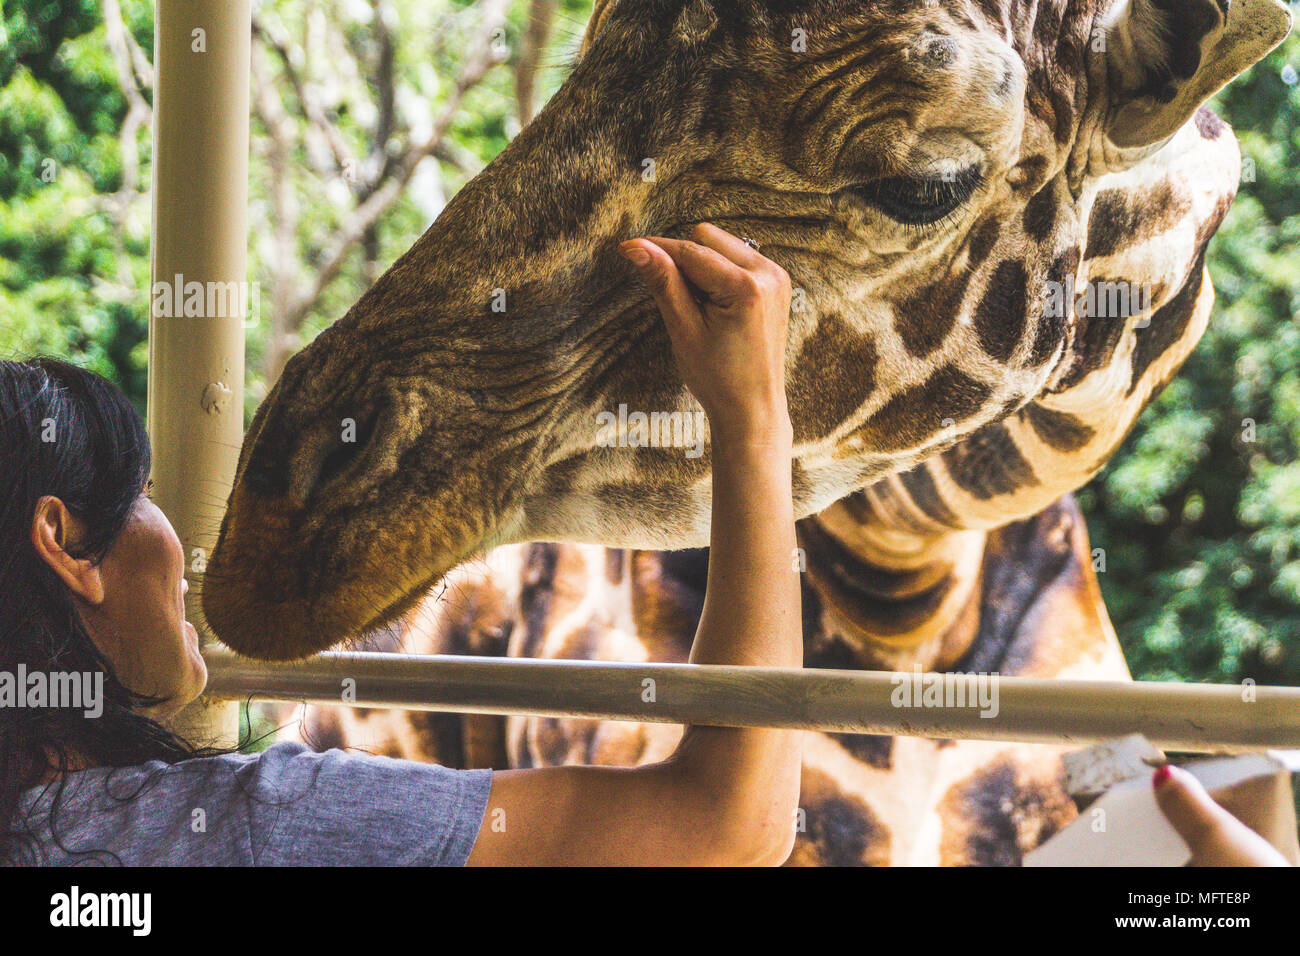 Monterrey, Nuevo León/ México - 4/8/2018: [photograph of a giraffe poking its head in a safari truck in Bioparque Estrella] Stock Photo